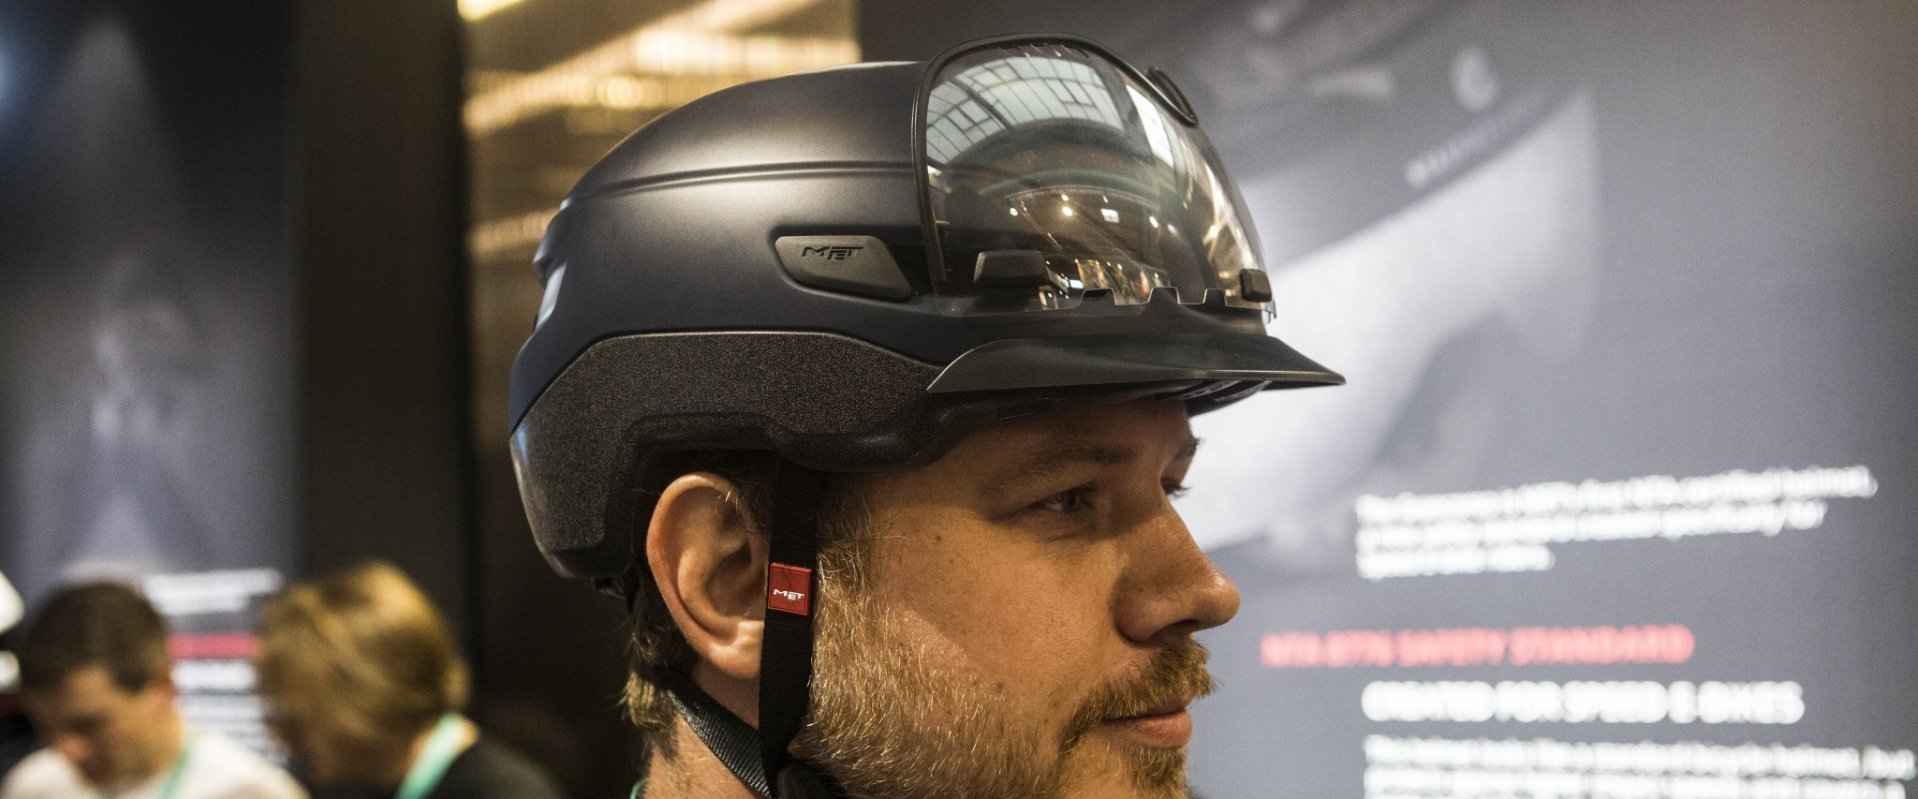 EIn Helm mit E-Bike Zuslassung, der MET Grancorso.